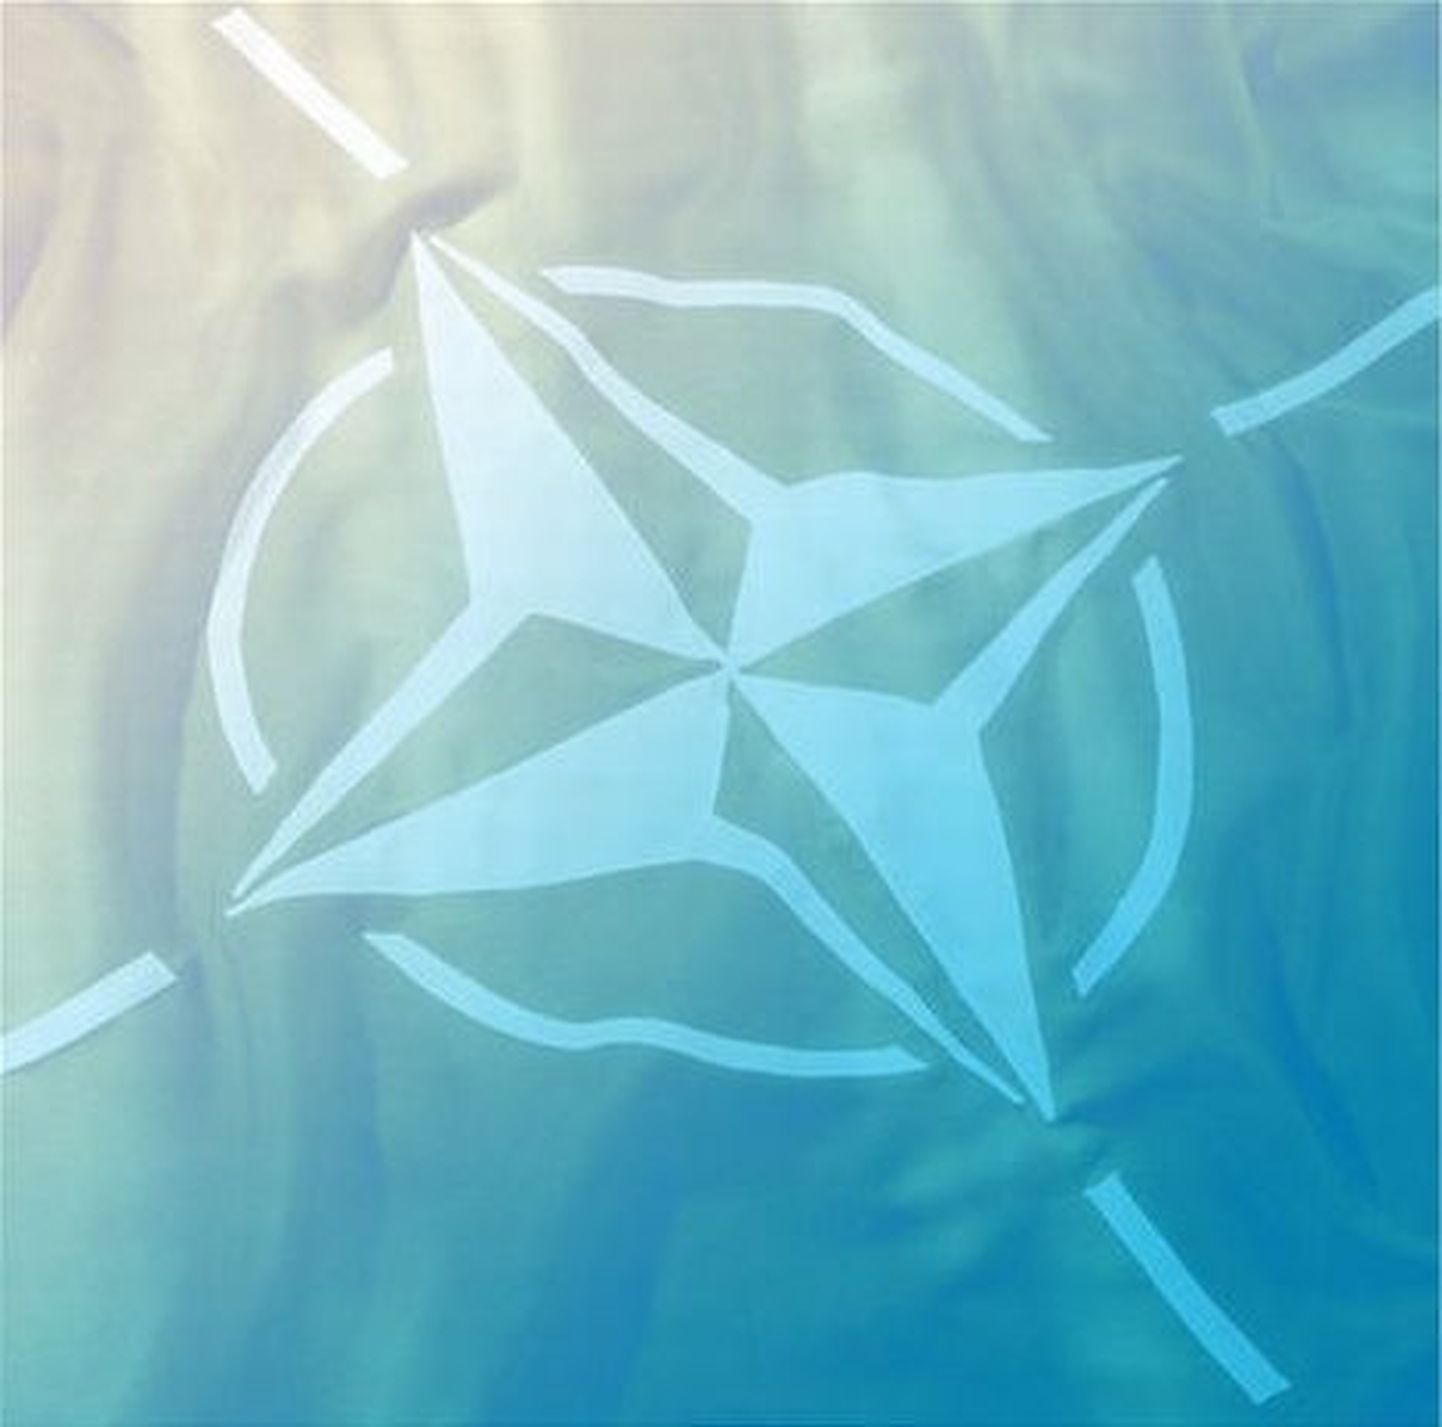 NATO lipp